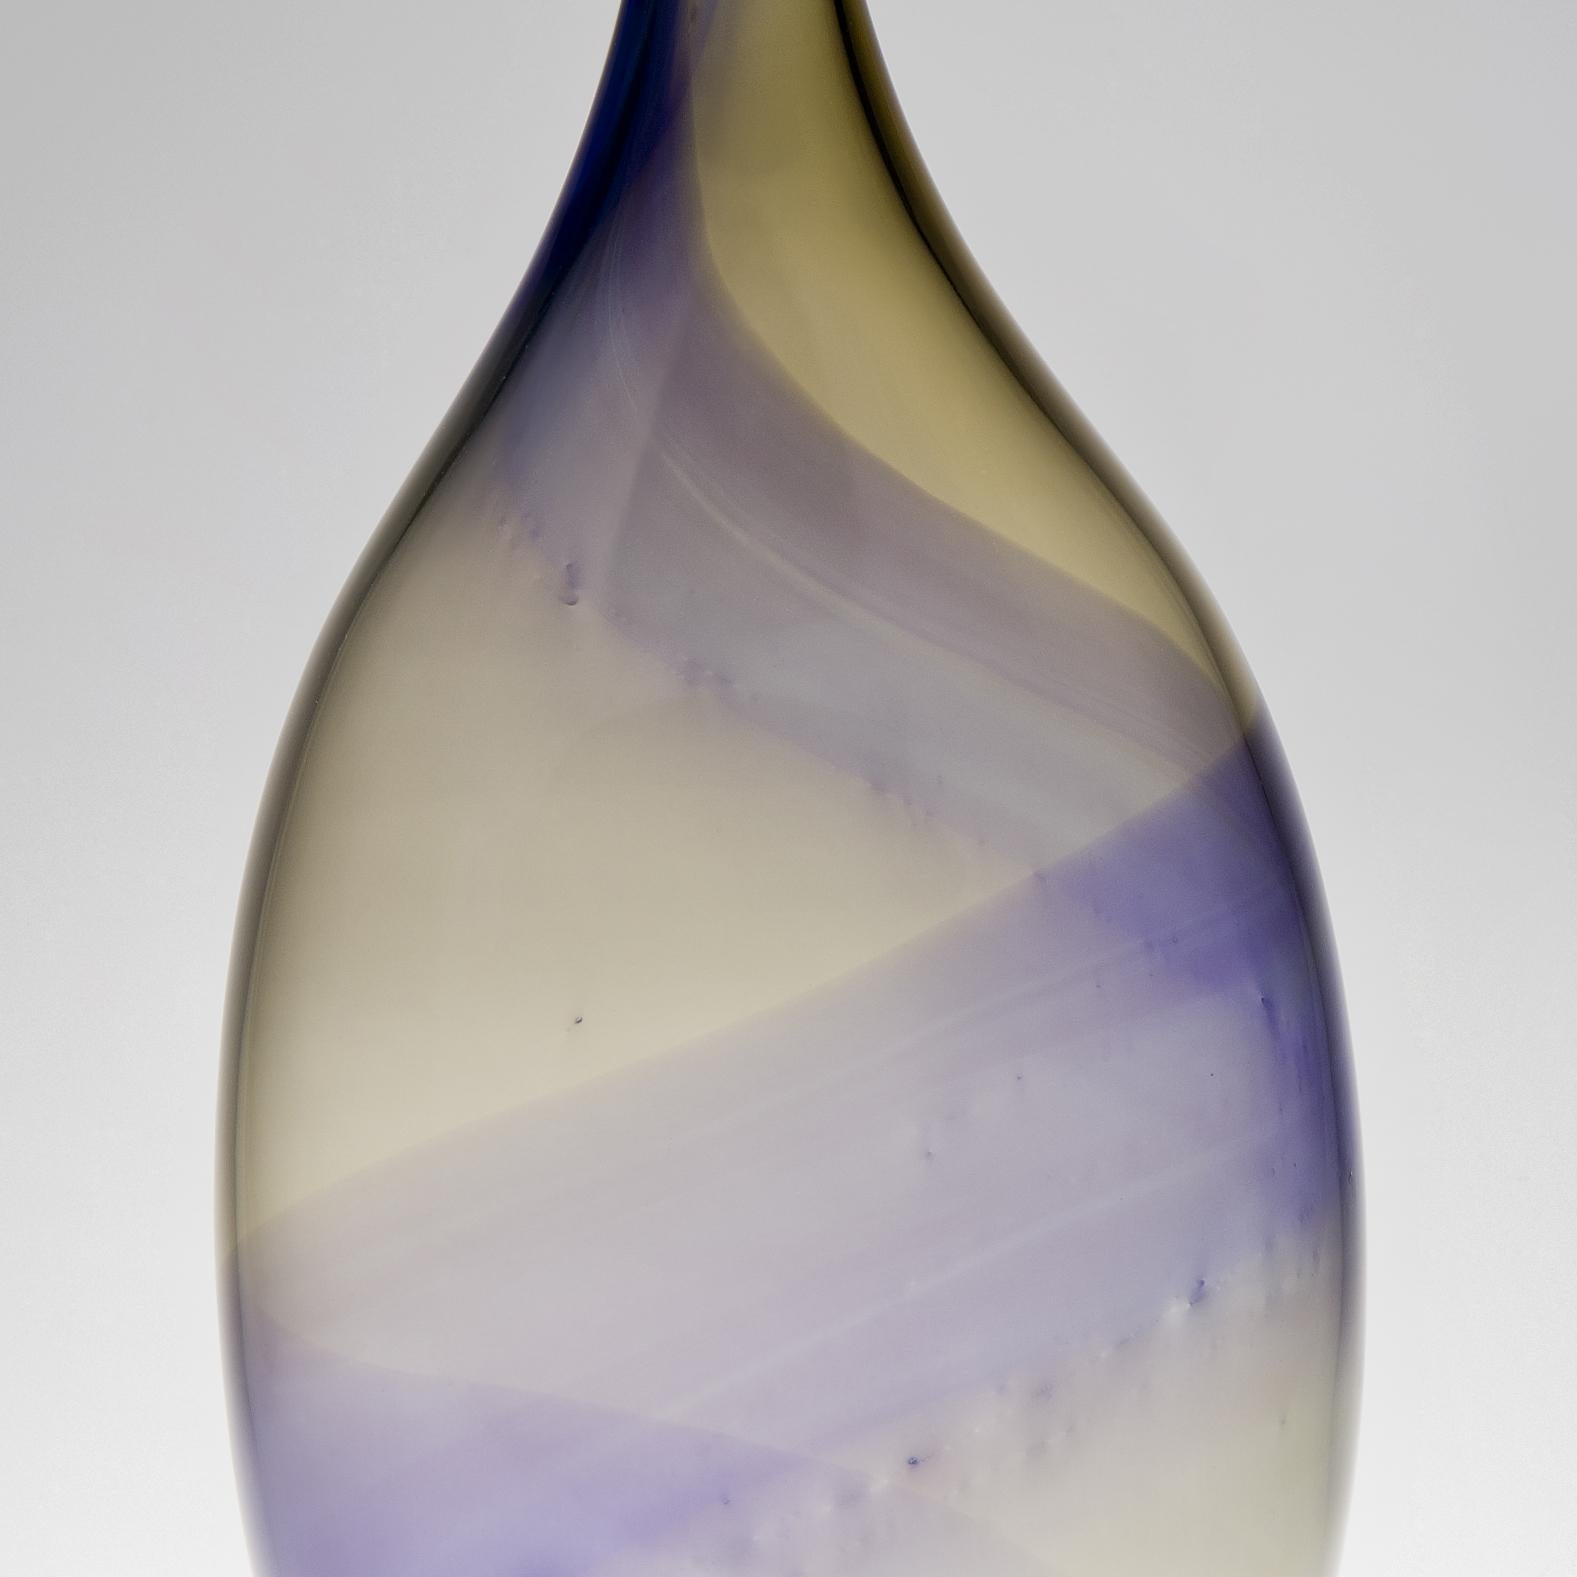 Organic Modern Fidji III, a Unique Bronze & Purple Tall Sculptural Bottle by Kjell Engman For Sale